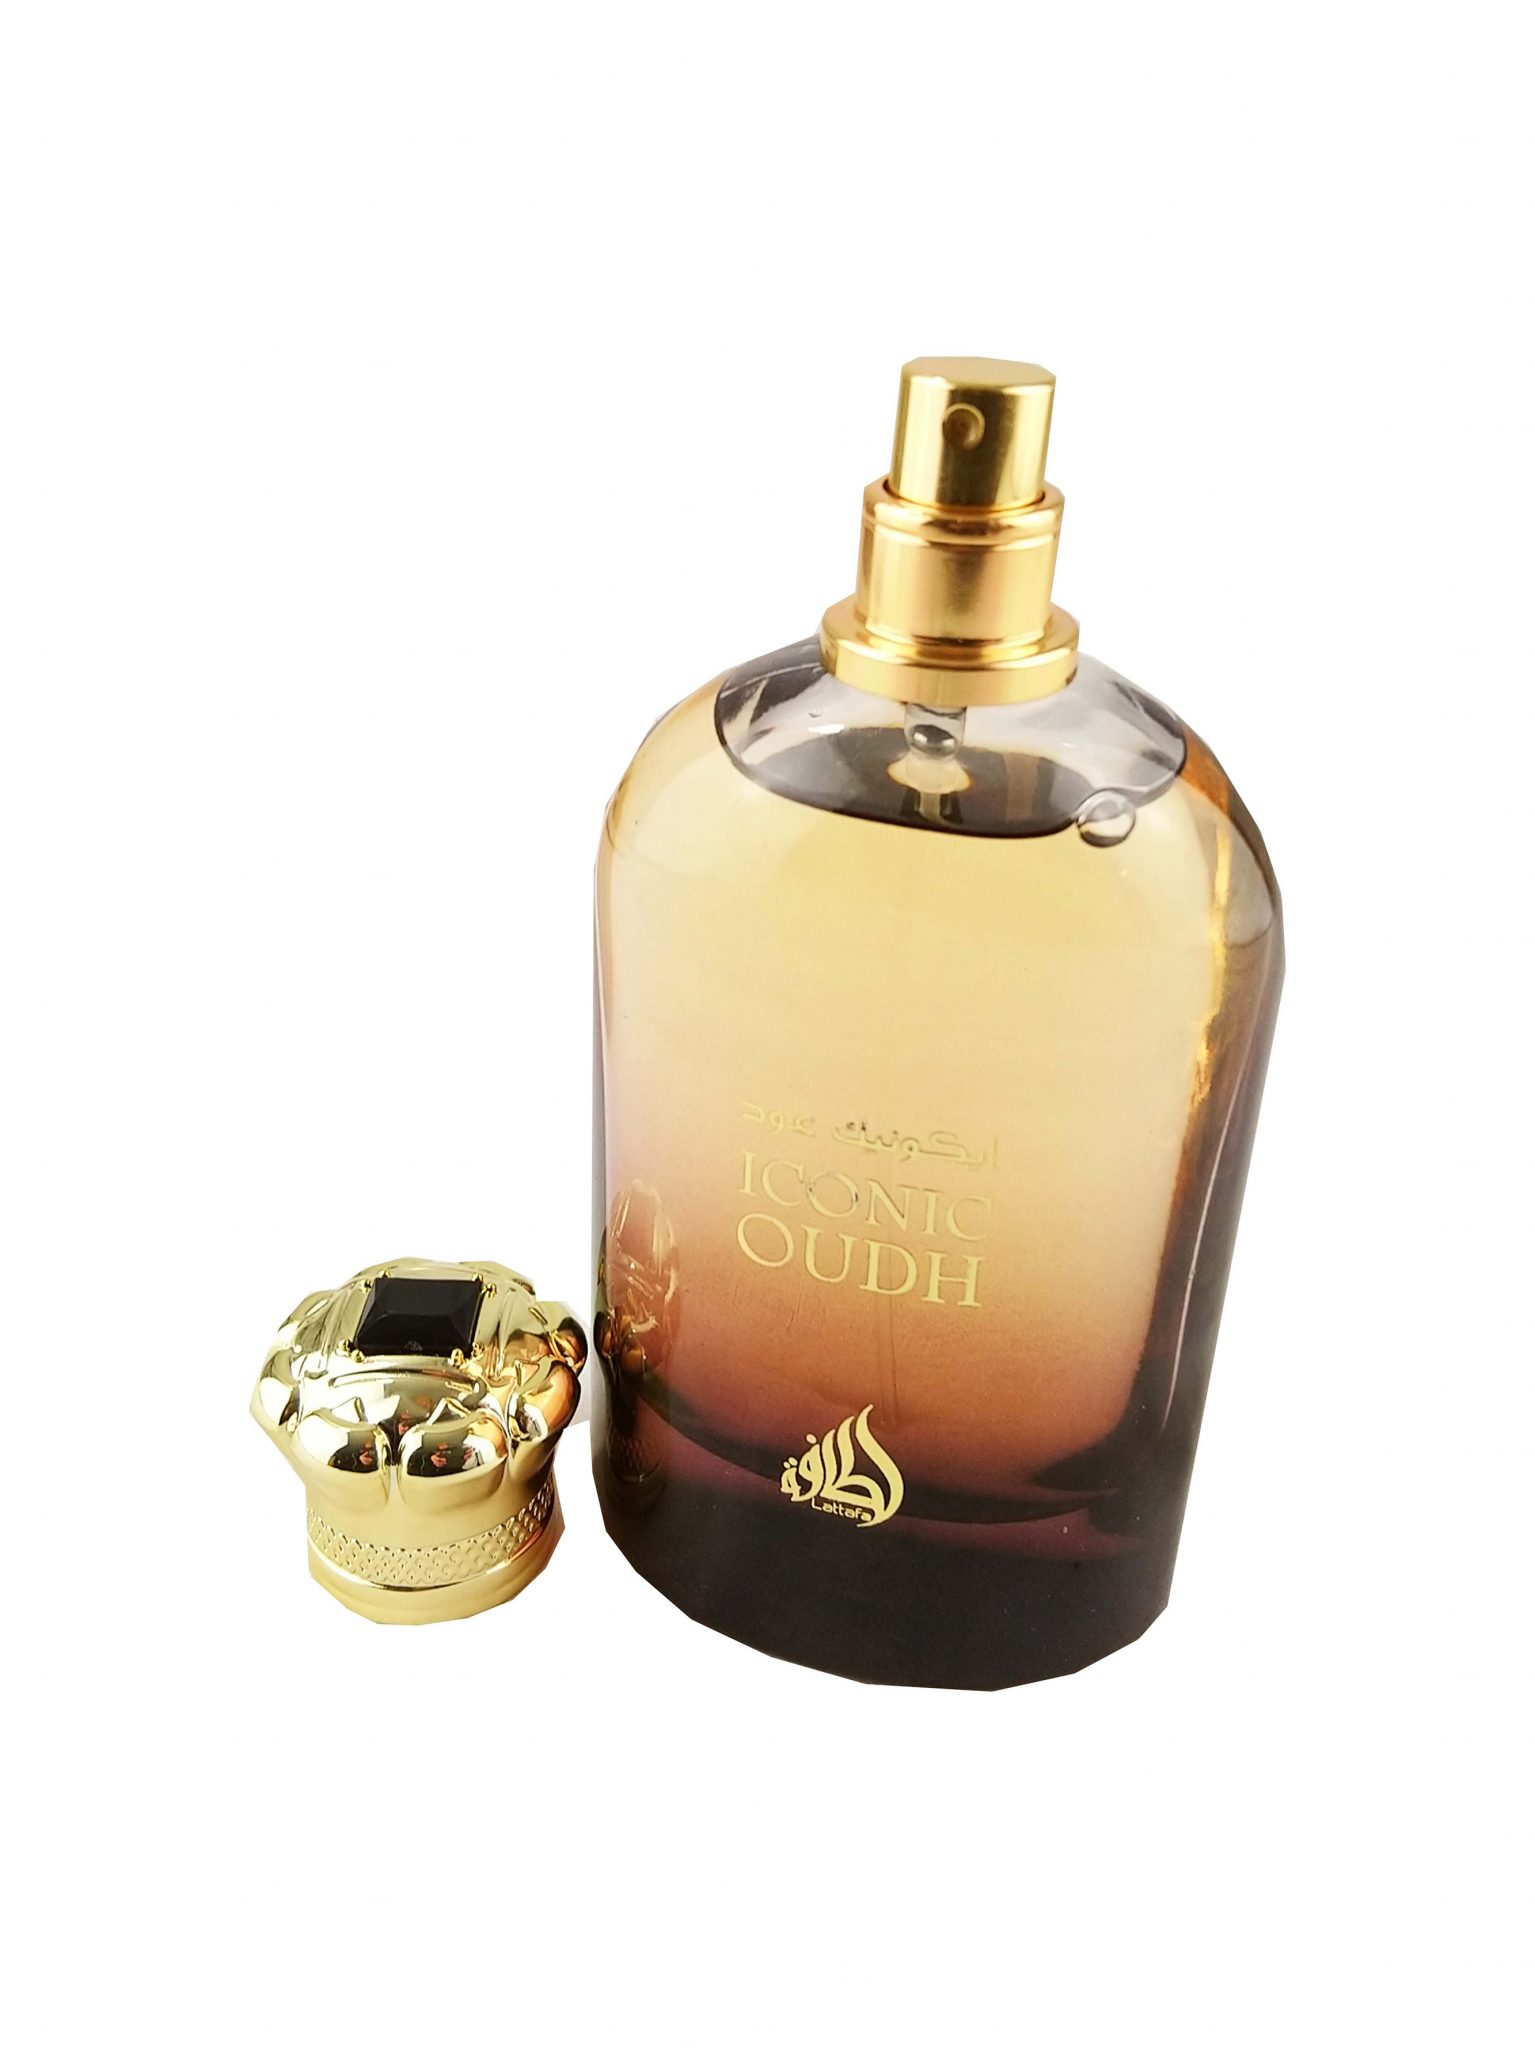 Perfume | Iconic Oud 100ml by Lattafa - E&A Distribution